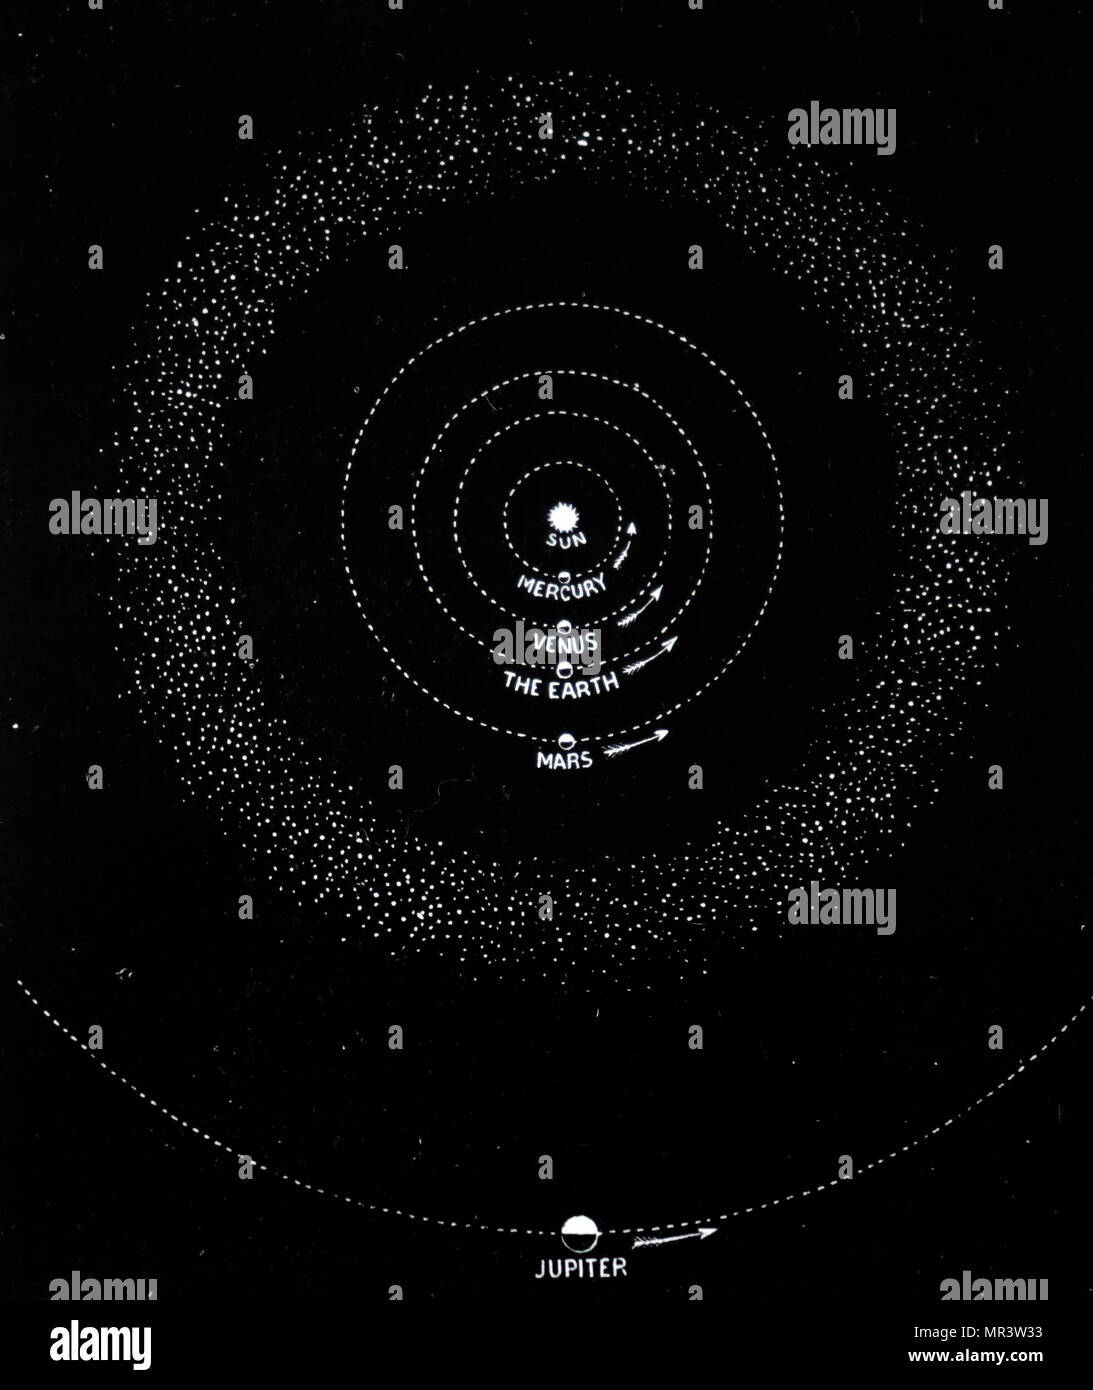 Diagramm des Sonnensystems, in dem die Zone von Asteroiden/planetoiden zwischen Mars und Jupiter. Vom 19. Jahrhundert Stockfoto